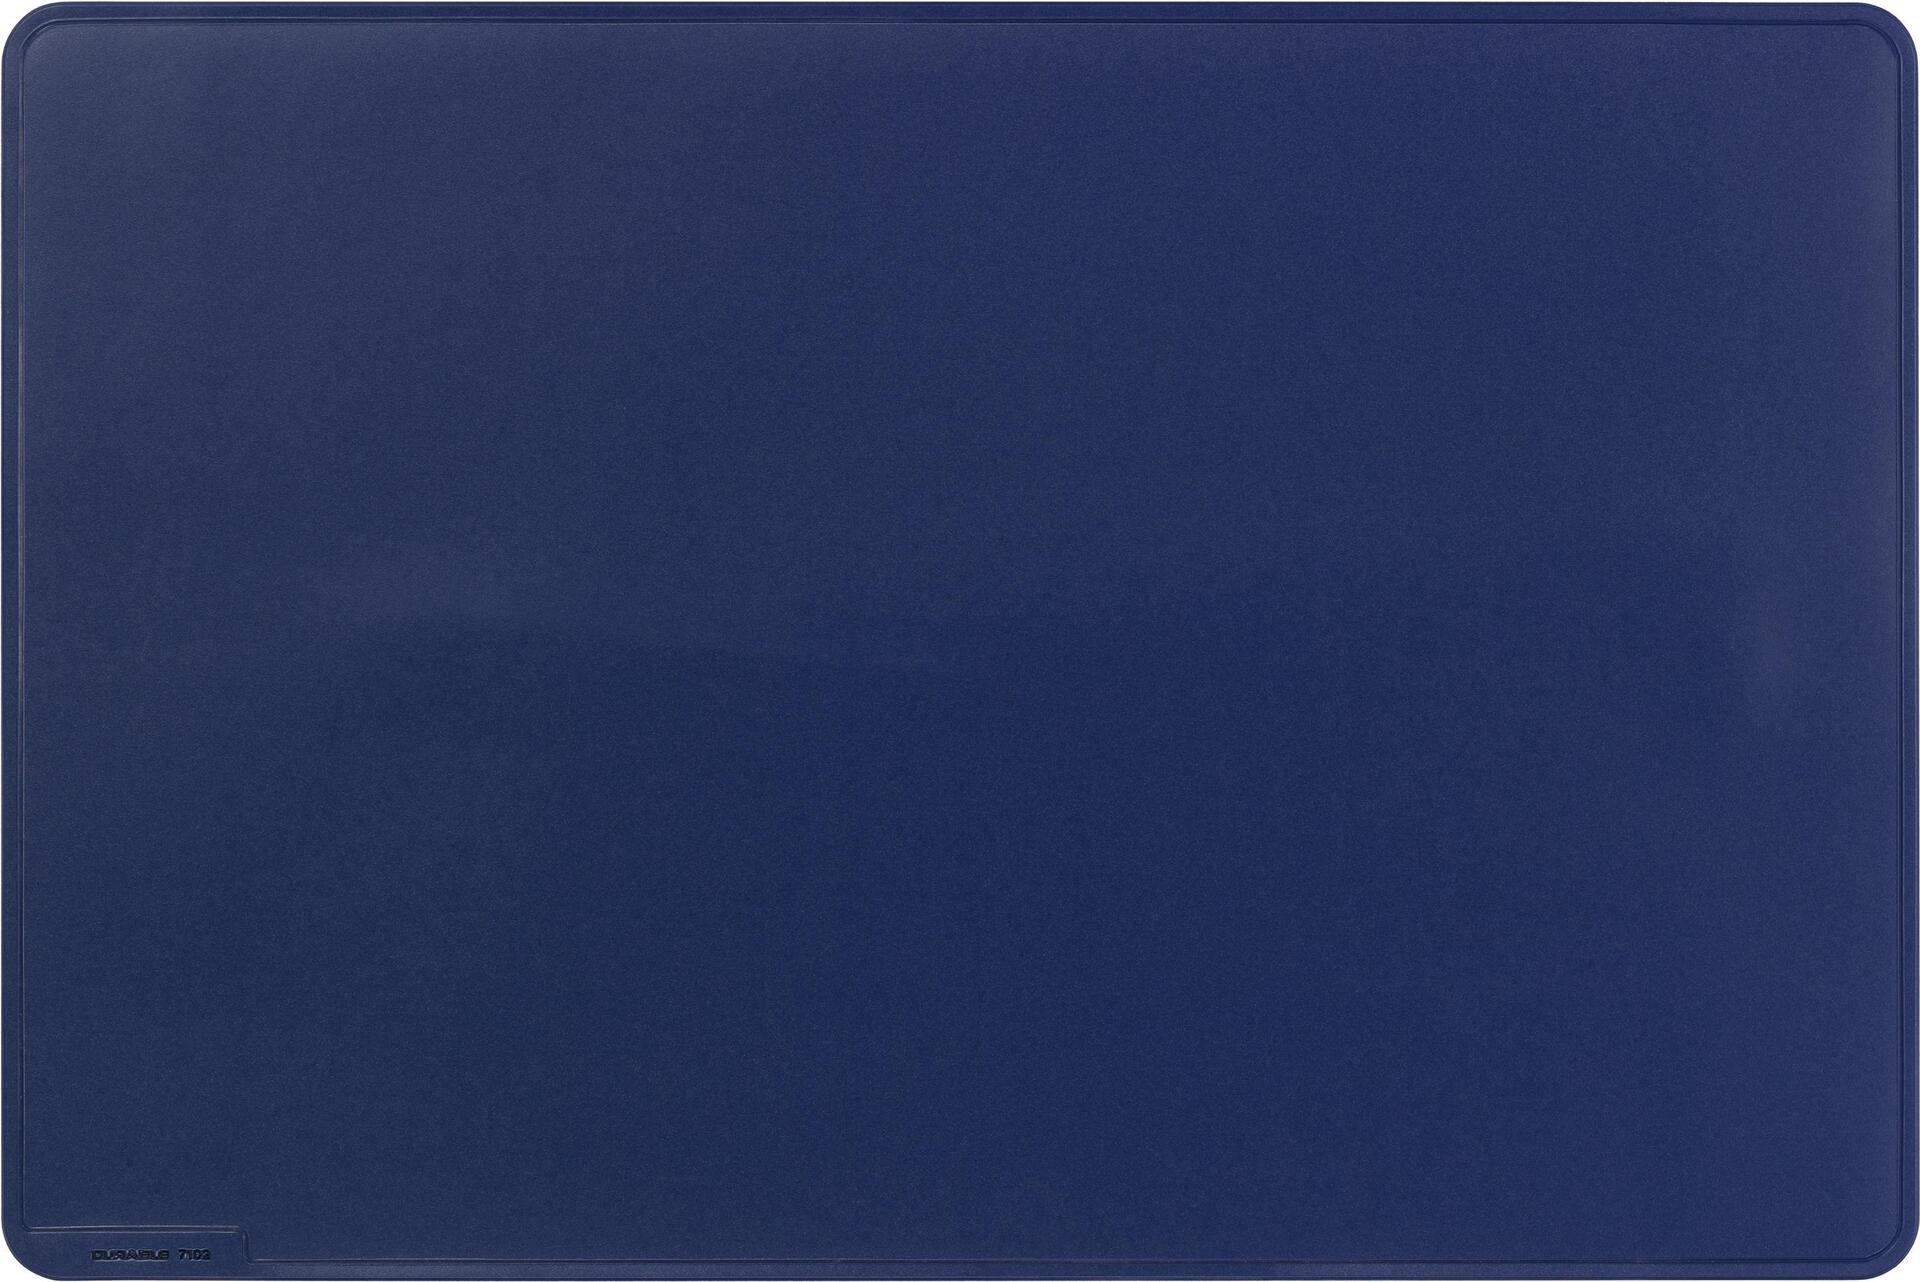 DURABLE Schreibunterlage, 530 x 400 mm, dunkelblau rutschfest, elastisch, zeitloses Design, mit Deko